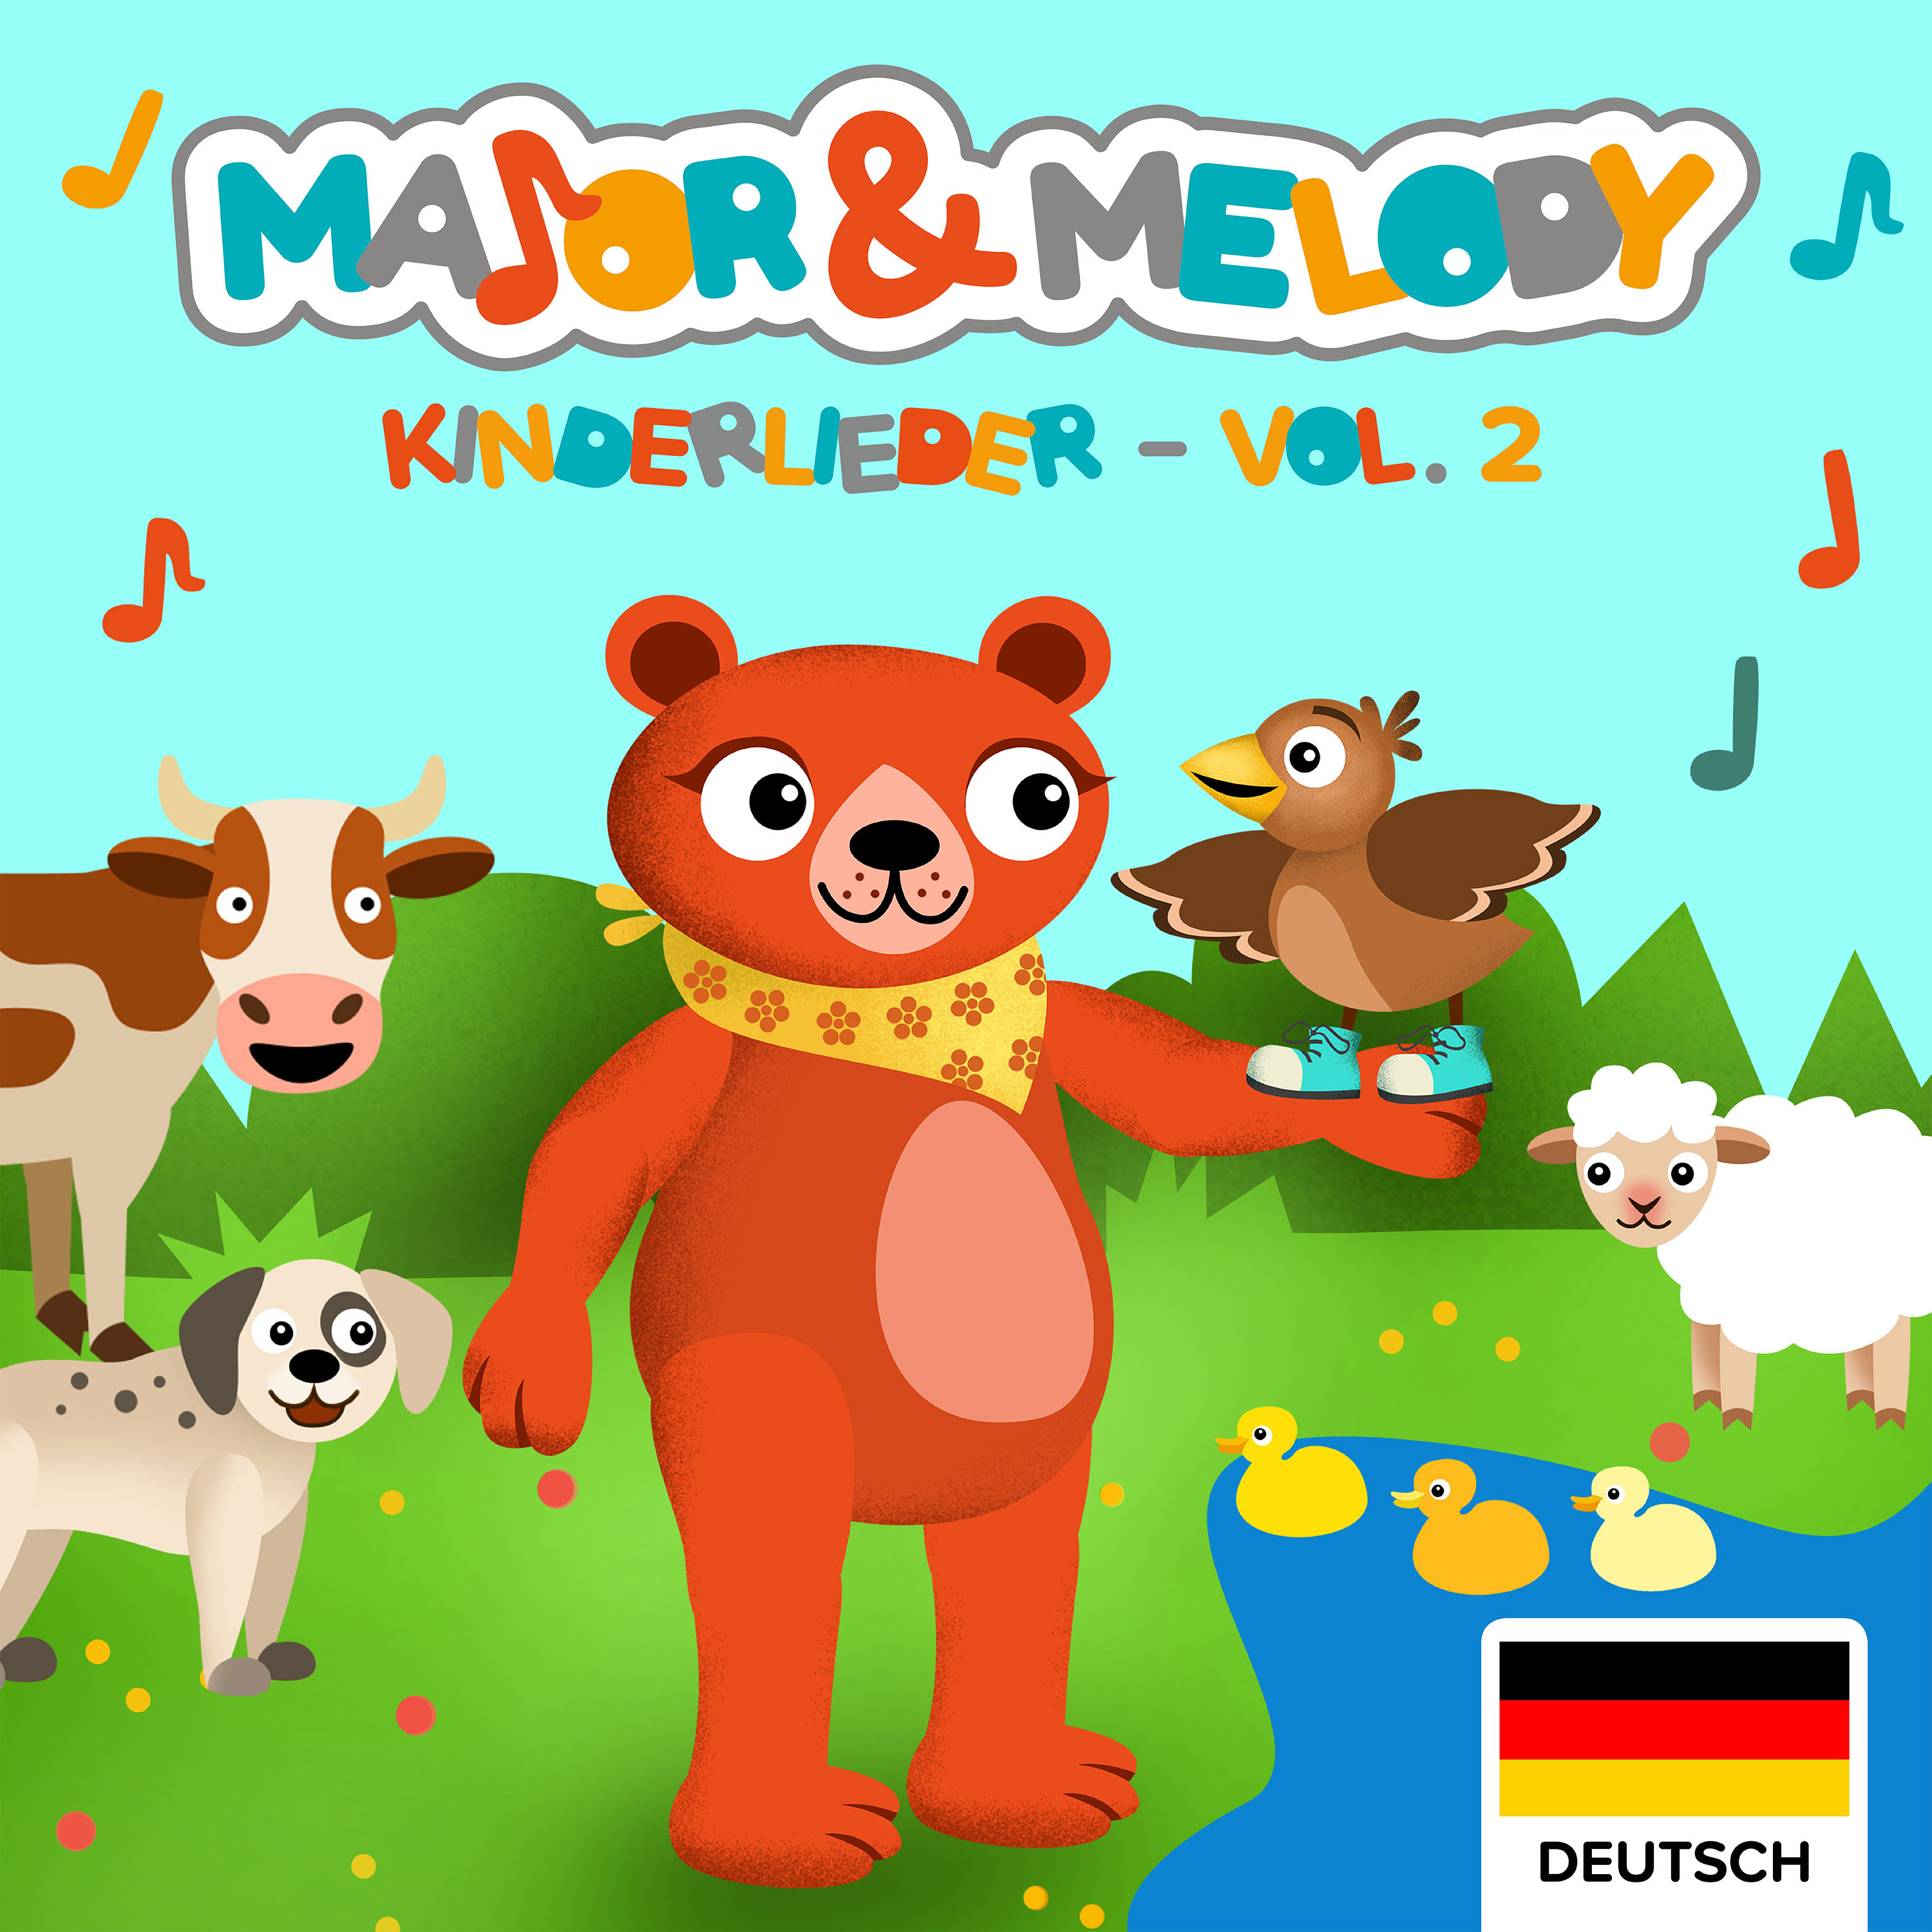 Major & Melody: Kinderlieder - Vol.2